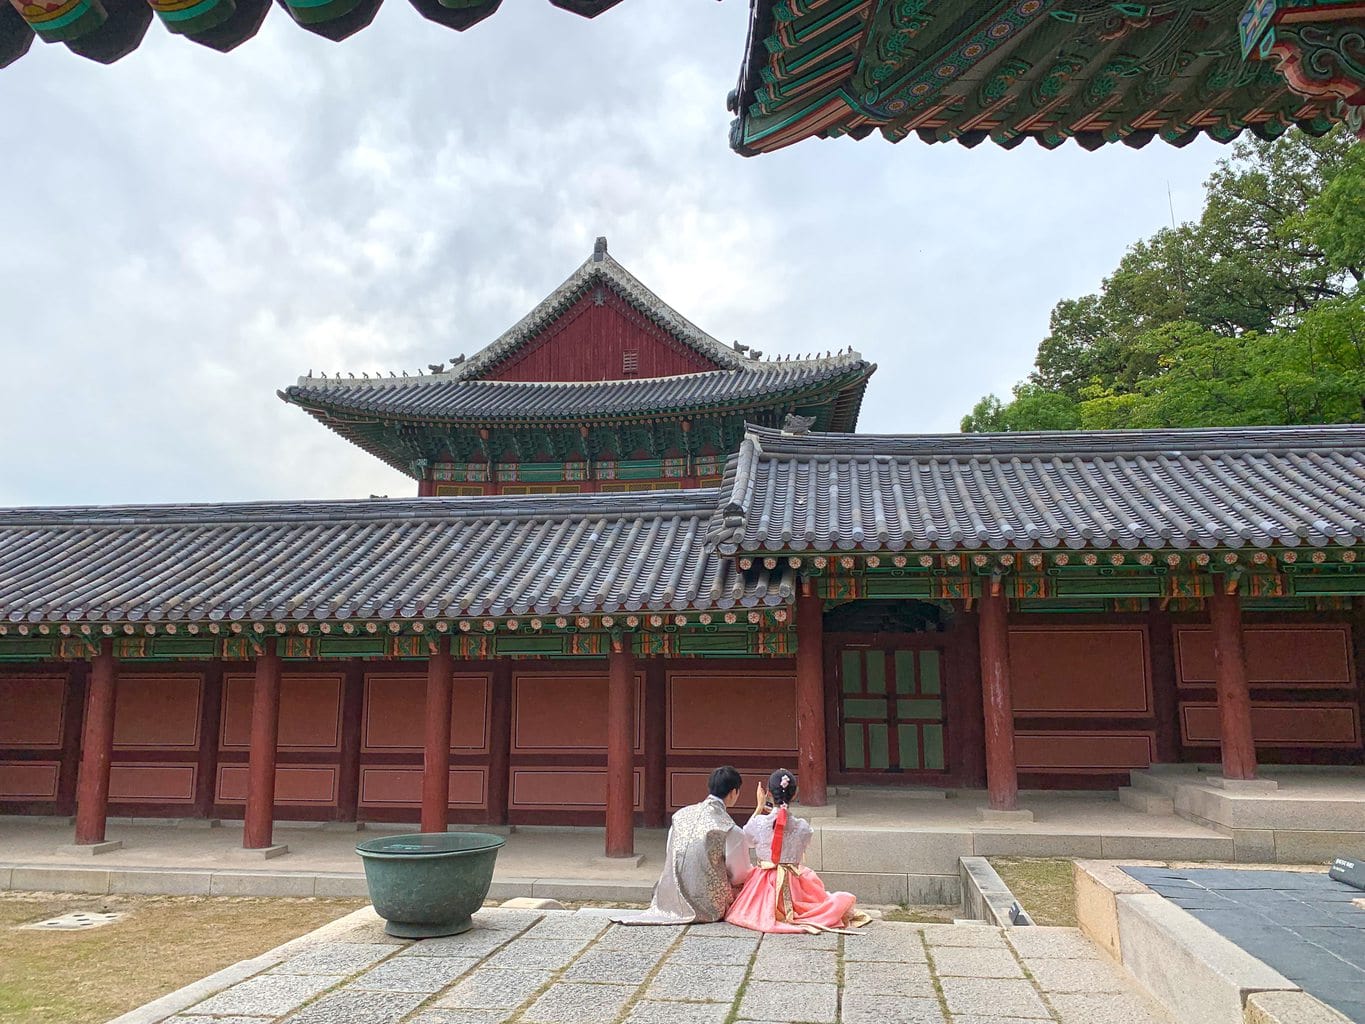 Having fun in hanbok at Changdeokgung Palace